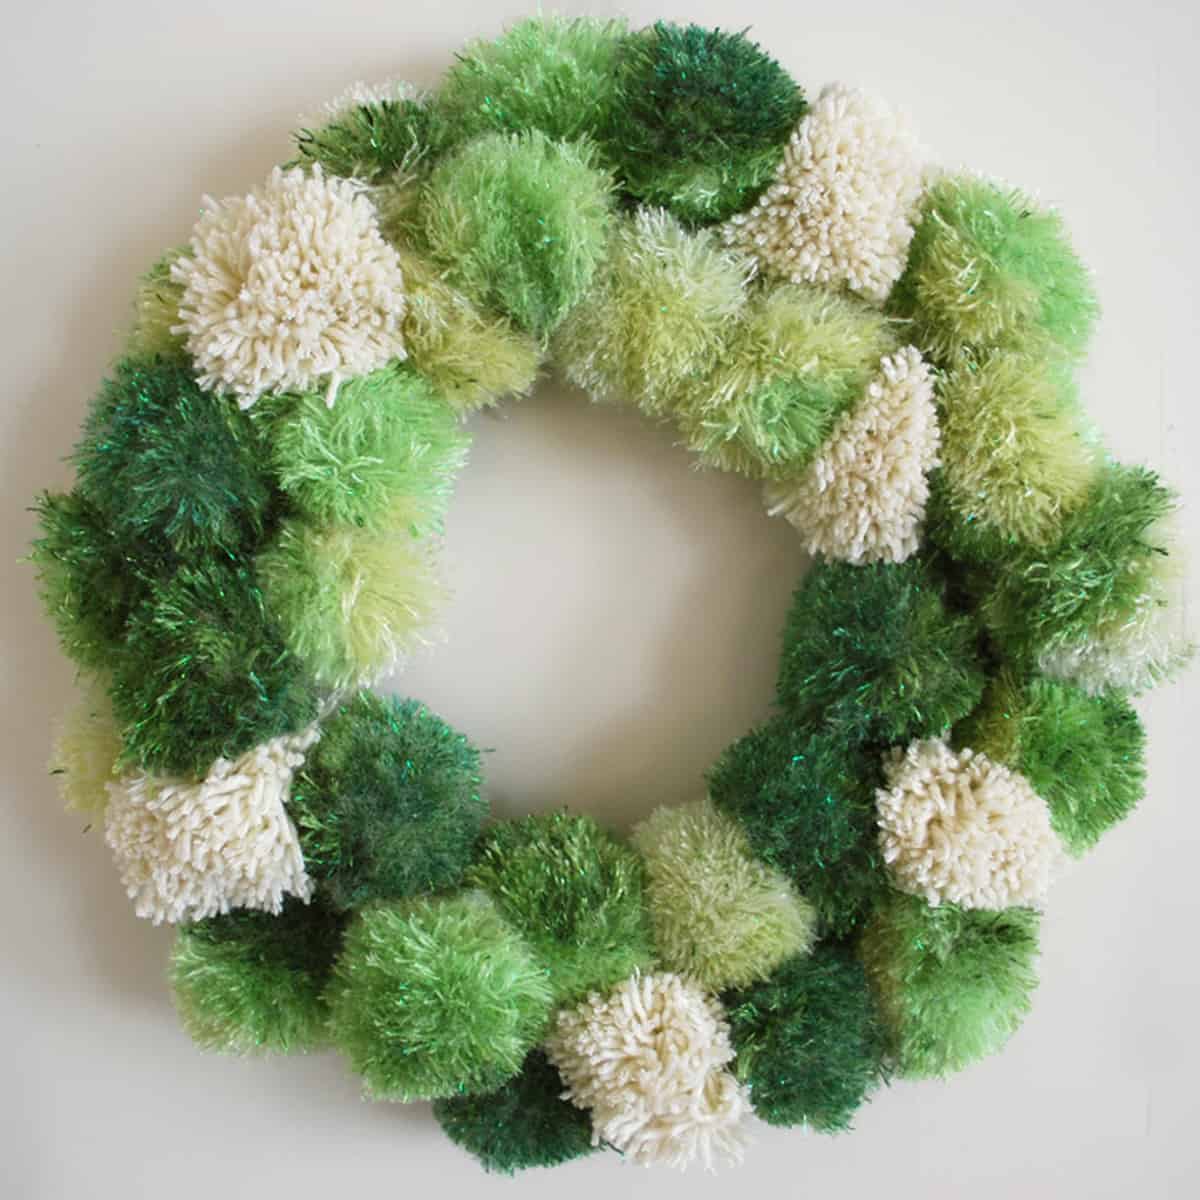 How to Make a Pom Pom Wreath - Studio Knit